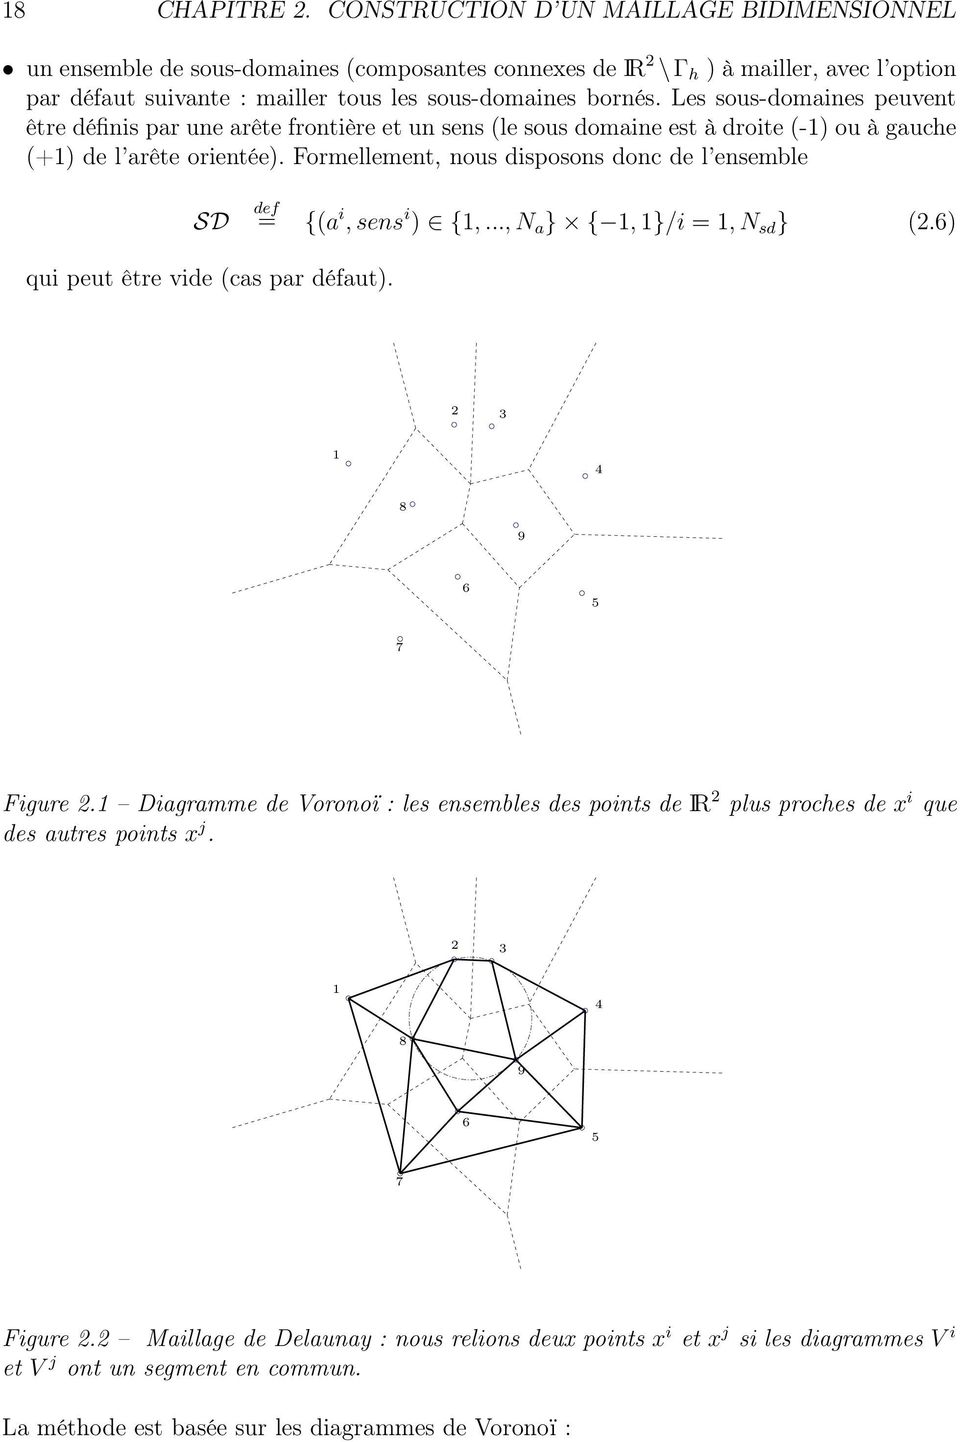 ensemble SD def = (a i, sens i ) 1,, N a 1, 1/i = 1, N sd (26) qui peut être vide (cas par défaut) 2 3 1 4 8 9 6 5 7 Figure 21 Diagramme de Voronoï : les ensembles des points de IR 2 plus proches de